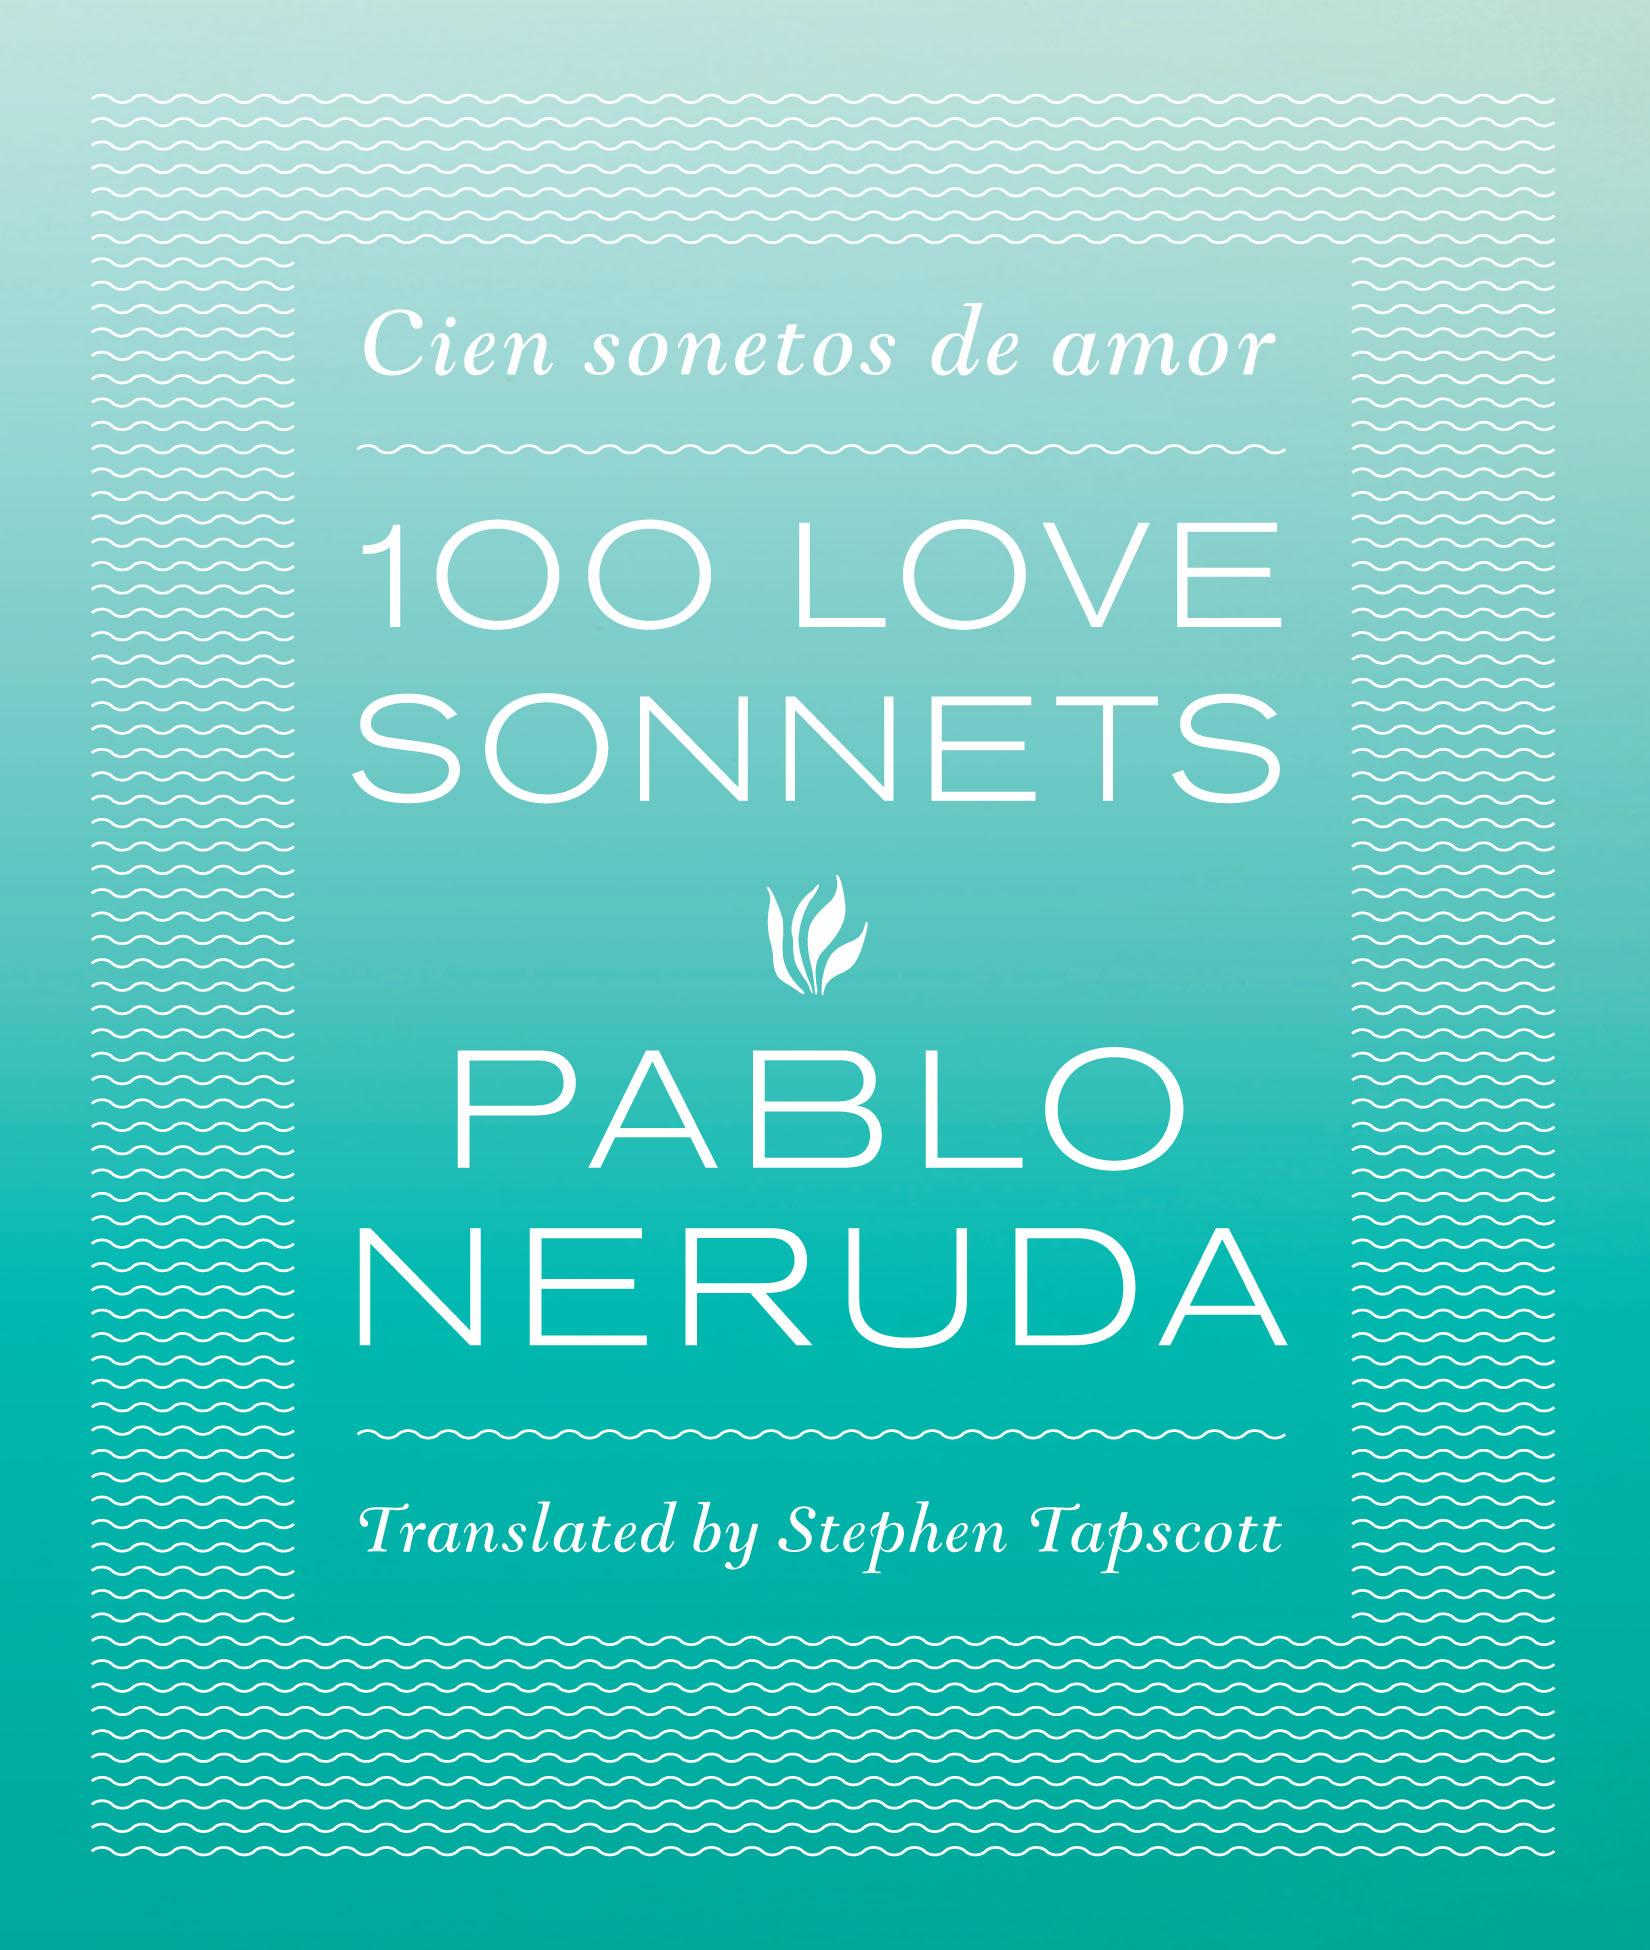 One Hundred Love Sonnets / Cien sonetos de amor / Pablo Neruda / Taschenbuch / Kartoniert / Broschiert / Englisch / 2014 / University of Texas Press / EAN 9780292756519 - Neruda, Pablo